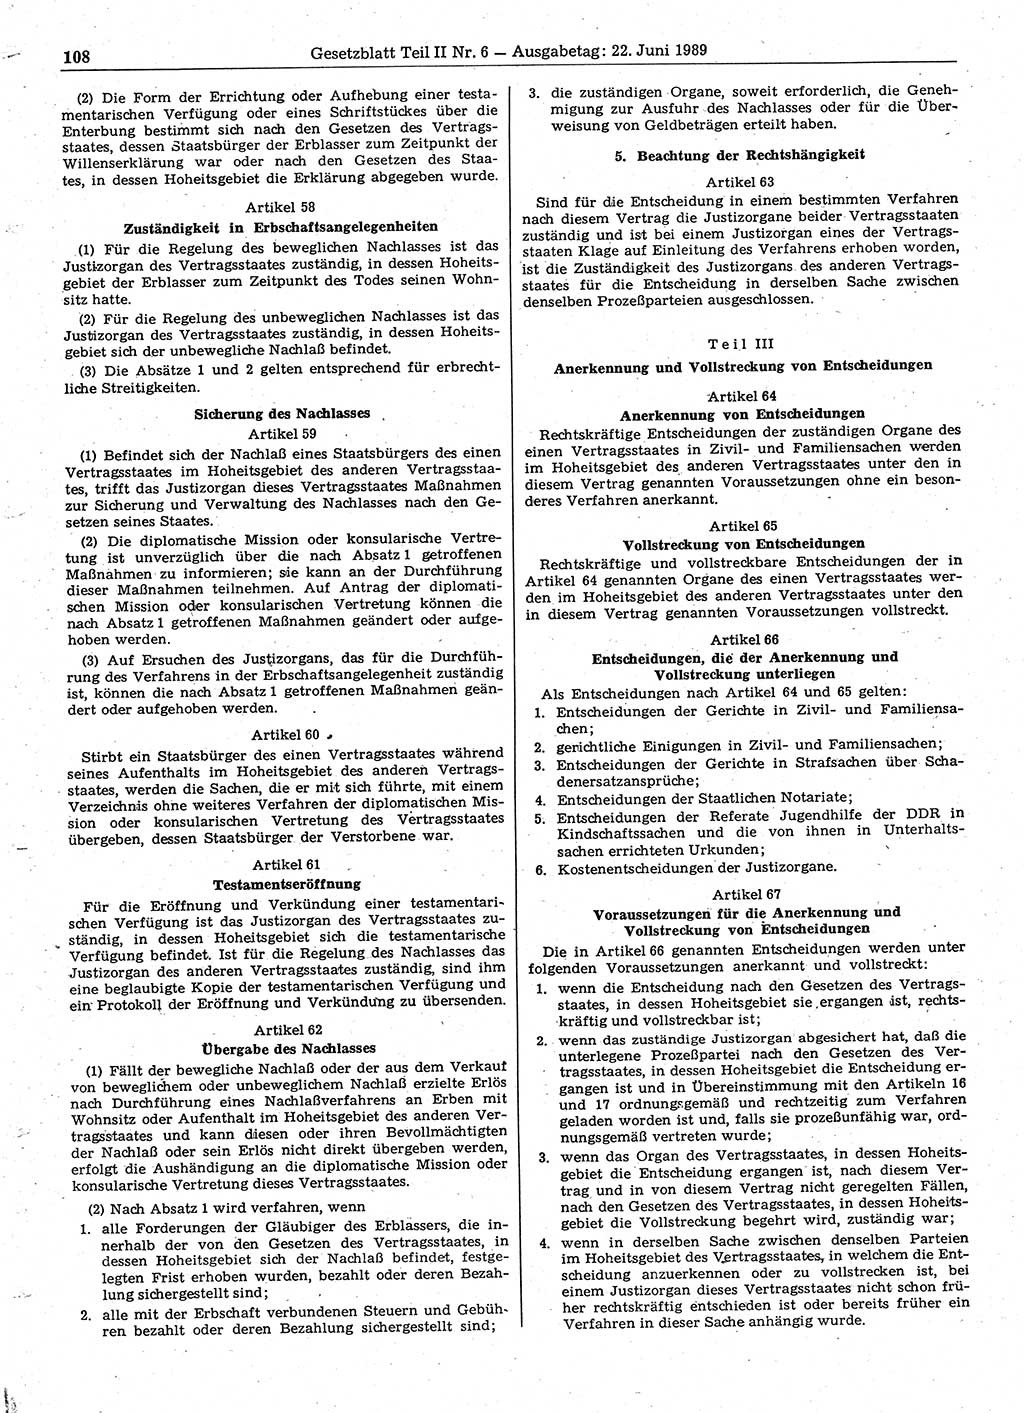 Gesetzblatt (GBl.) der Deutschen Demokratischen Republik (DDR) Teil ⅠⅠ 1989, Seite 108 (GBl. DDR ⅠⅠ 1989, S. 108)